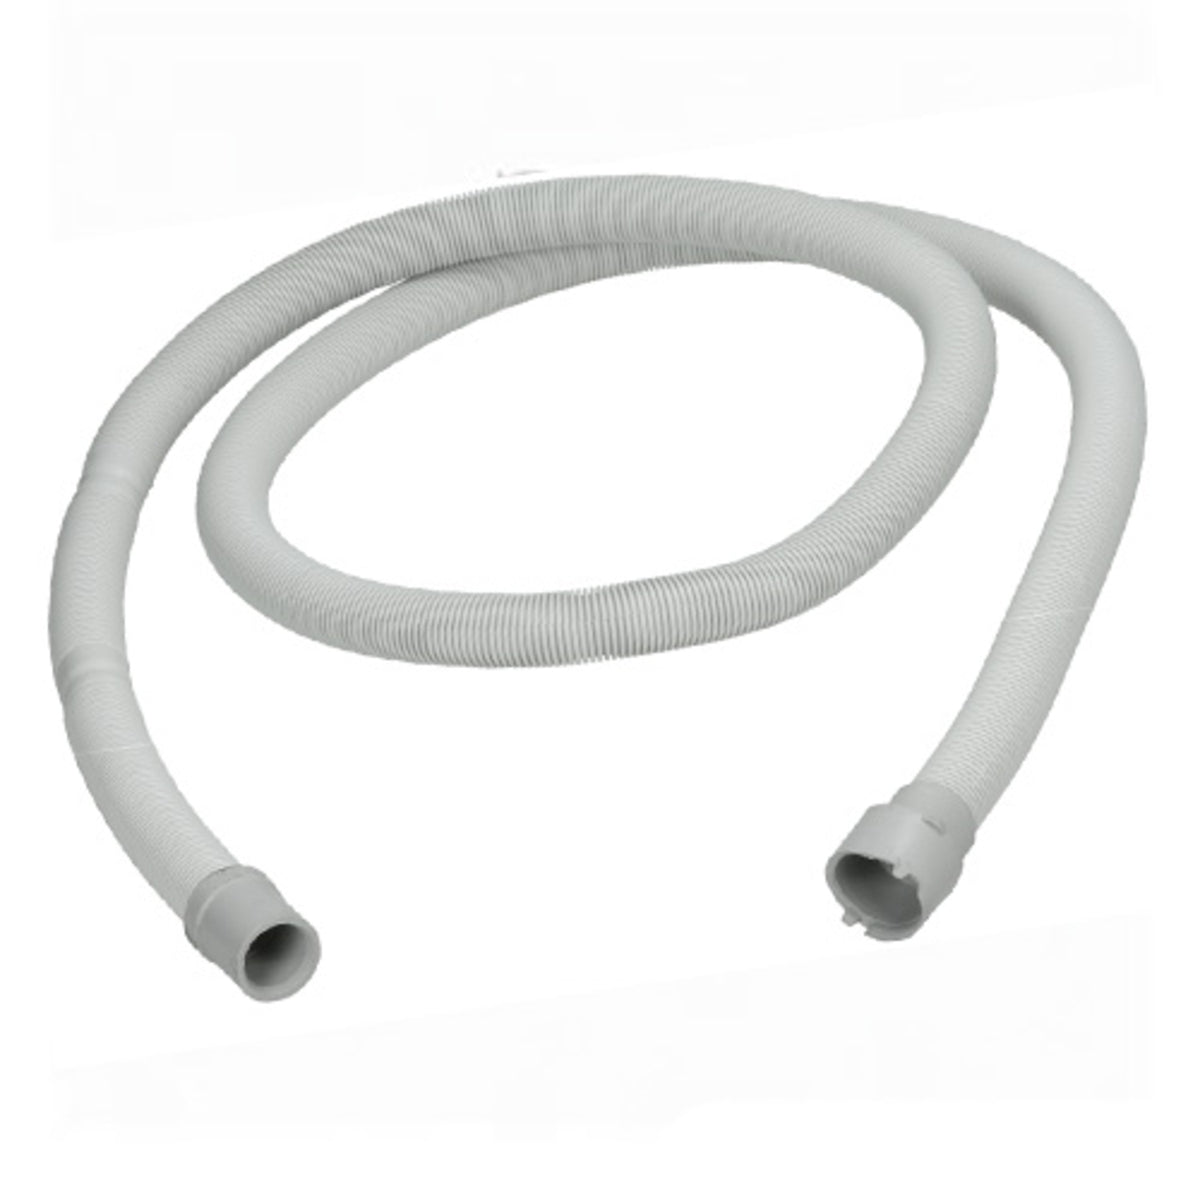 Tubo de salida flexible tubo de salida tubo de desagüe lavadora lavavajillas  70 / 200cm